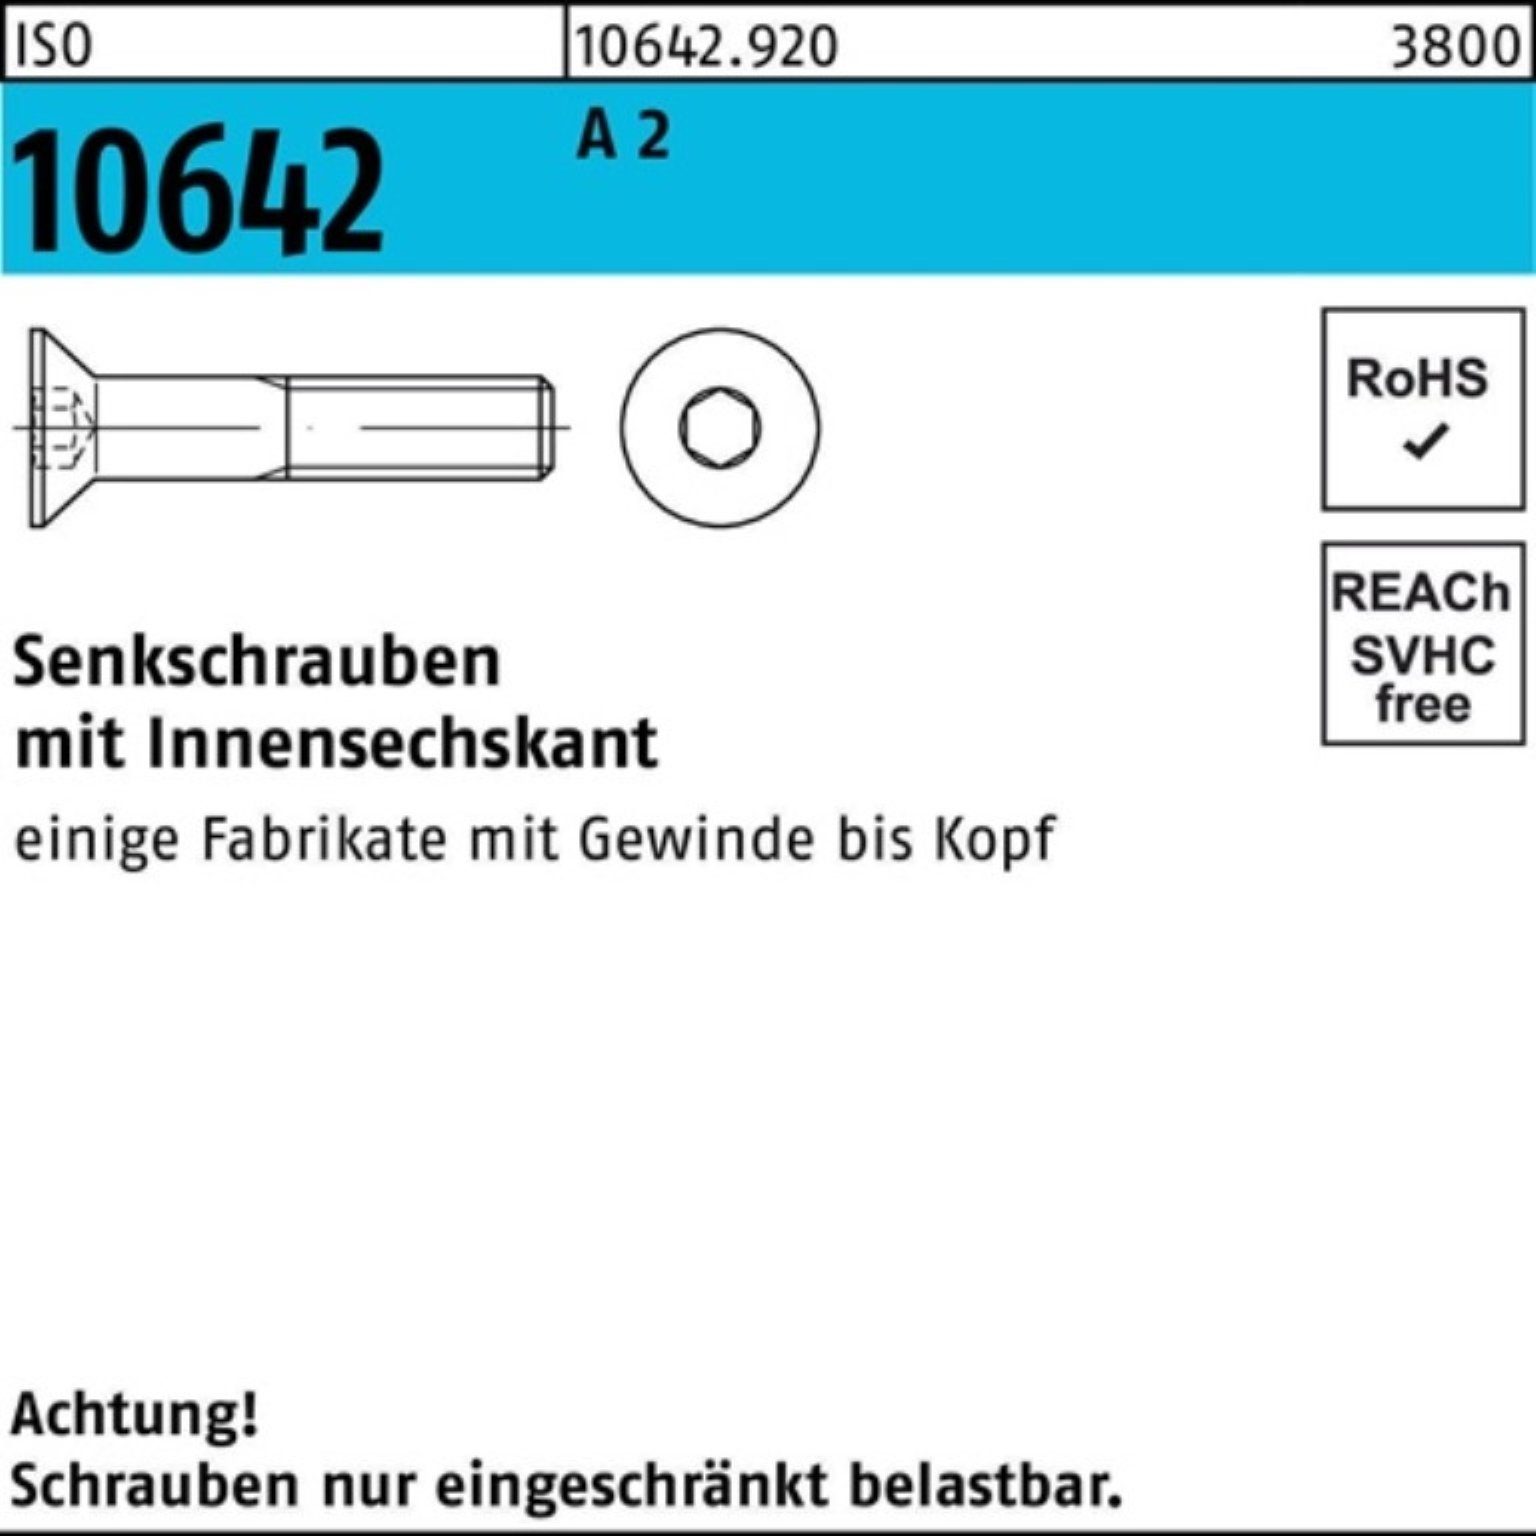 Stück Senkschraube A 10642 100er Senkschraube 100 M10x Reyher 20 Pack ISO 2 Innen-6kt ISO